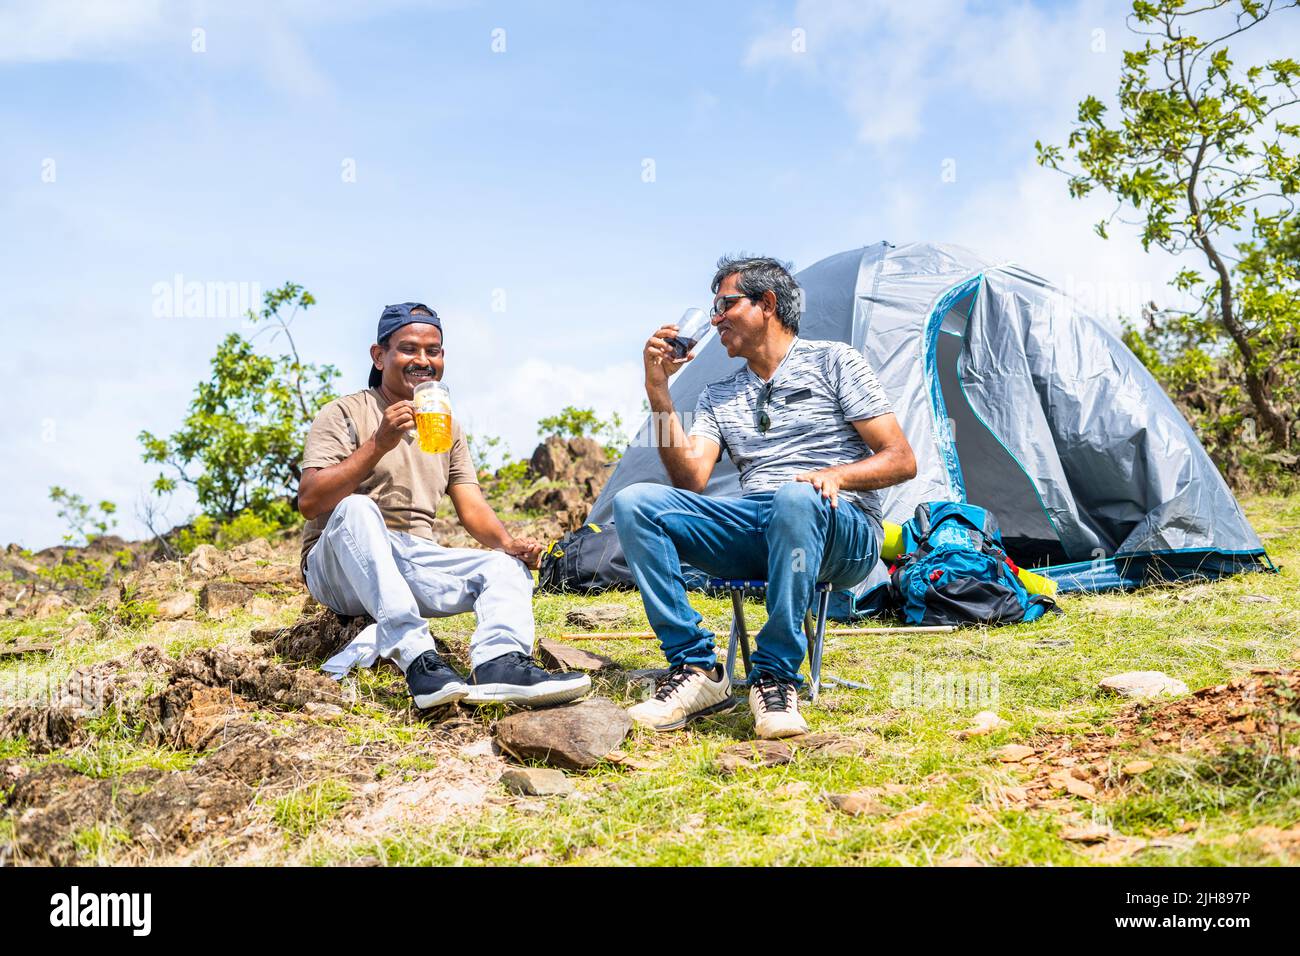 Glücklich lächelnde Wanderer, die sich beim Biertrinken gut unterhalten, während sie sich vor dem Zelt am Hügel unterhalten - Konzept der Freundschaft, Urlaub Stockfoto